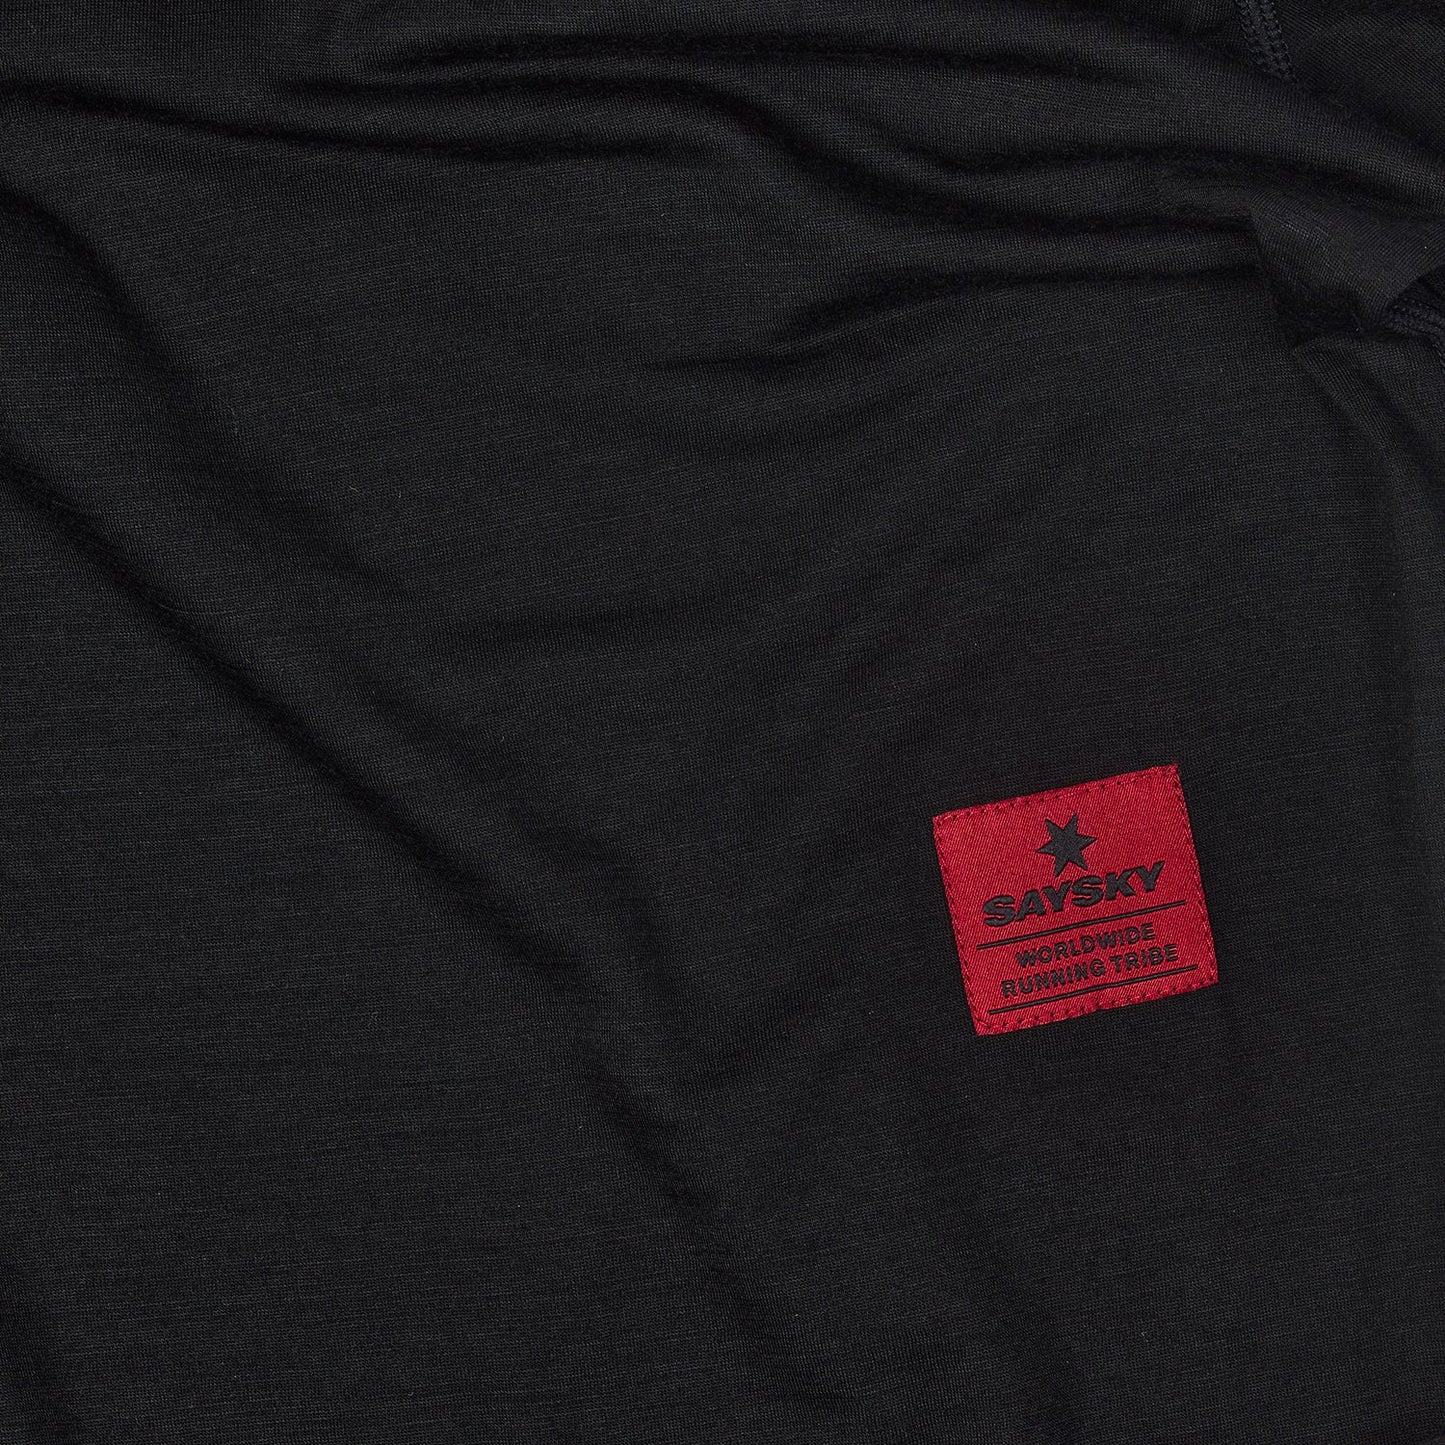 ランニングTシャツ(ロングスリーブ) IMRLS10 Classic Merino Base 150 LS - Black/Red Dahlia [ユニセックス]